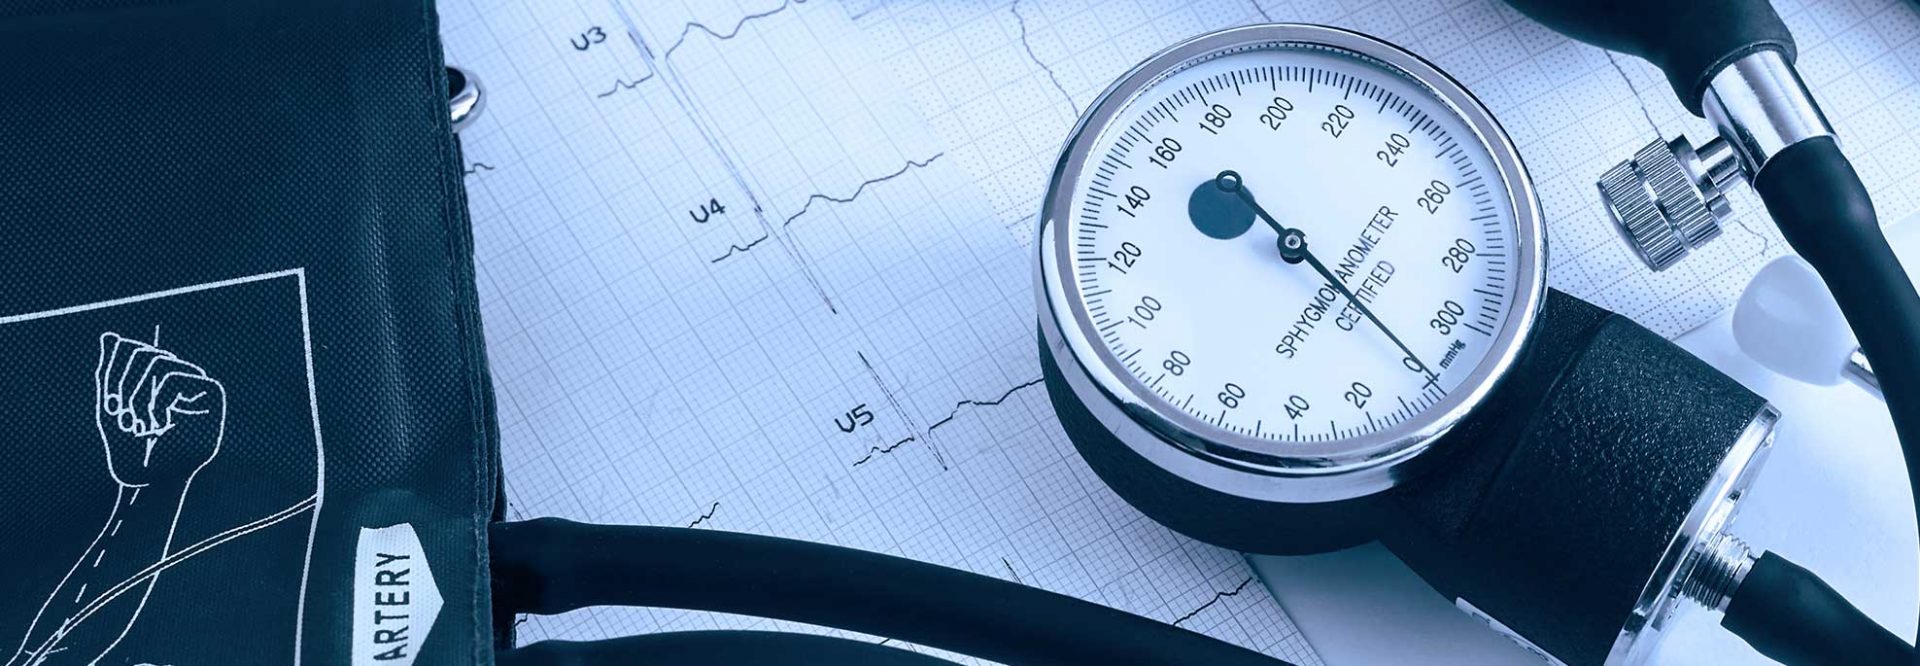 Nadciśnienie tętnicze - przyczyny, objawy i leczenie wysokiego ciśnienia krwi